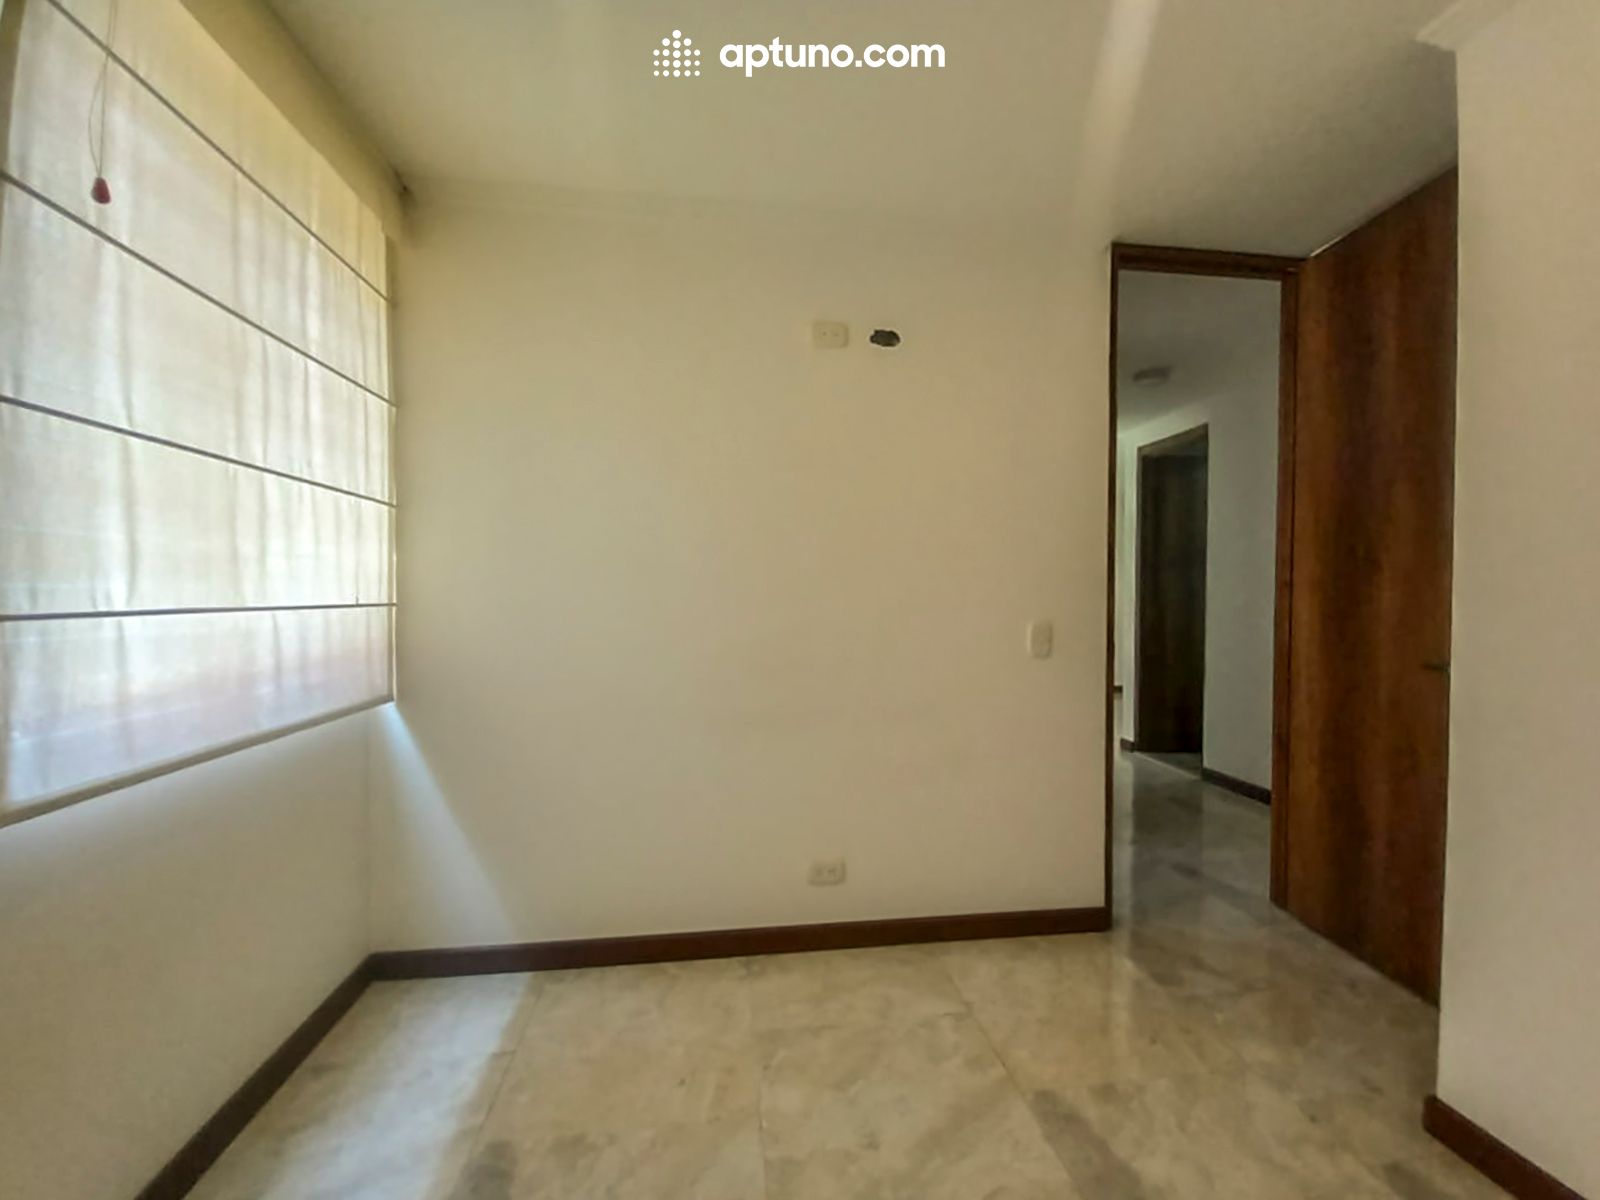 Apartamento en arriendo Madrid 63 m² - $ 1.000.000